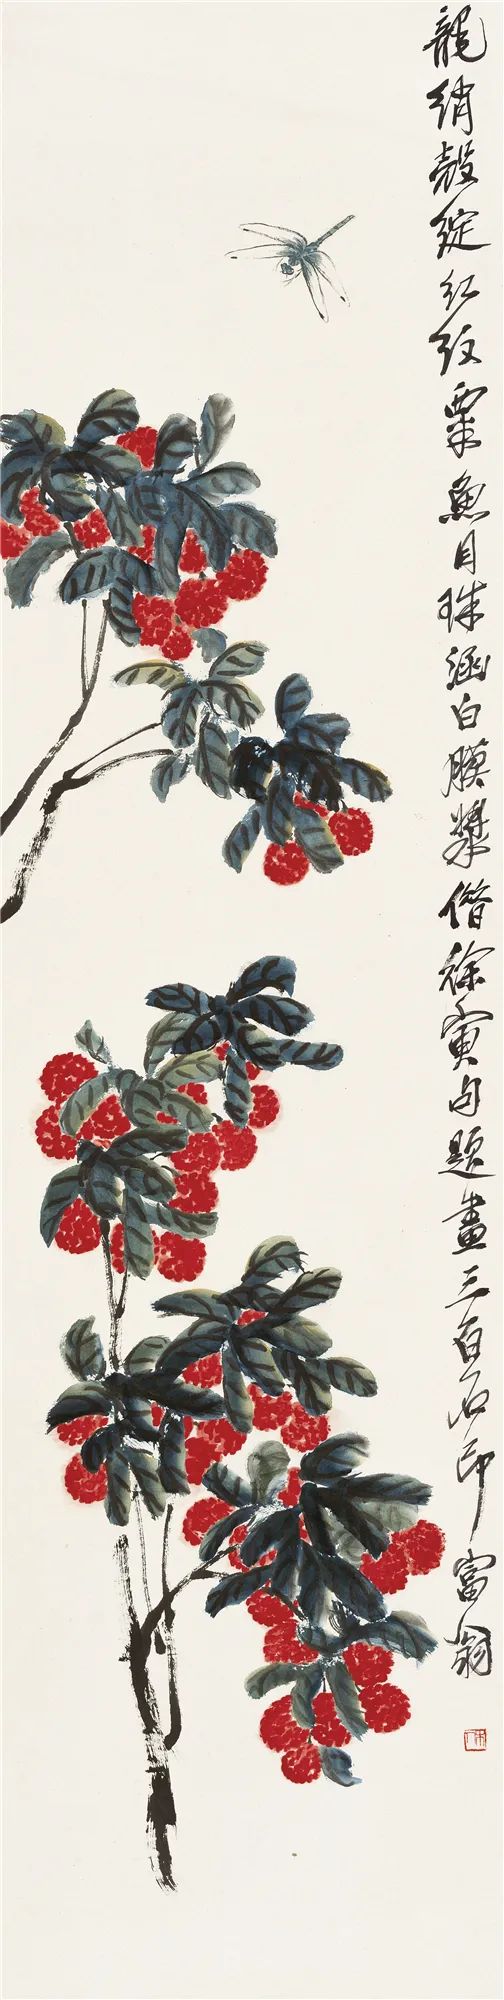 荔枝蜻蜓 齐白石 136cm×33.4cm 无年款 纸本设色 北京画院藏